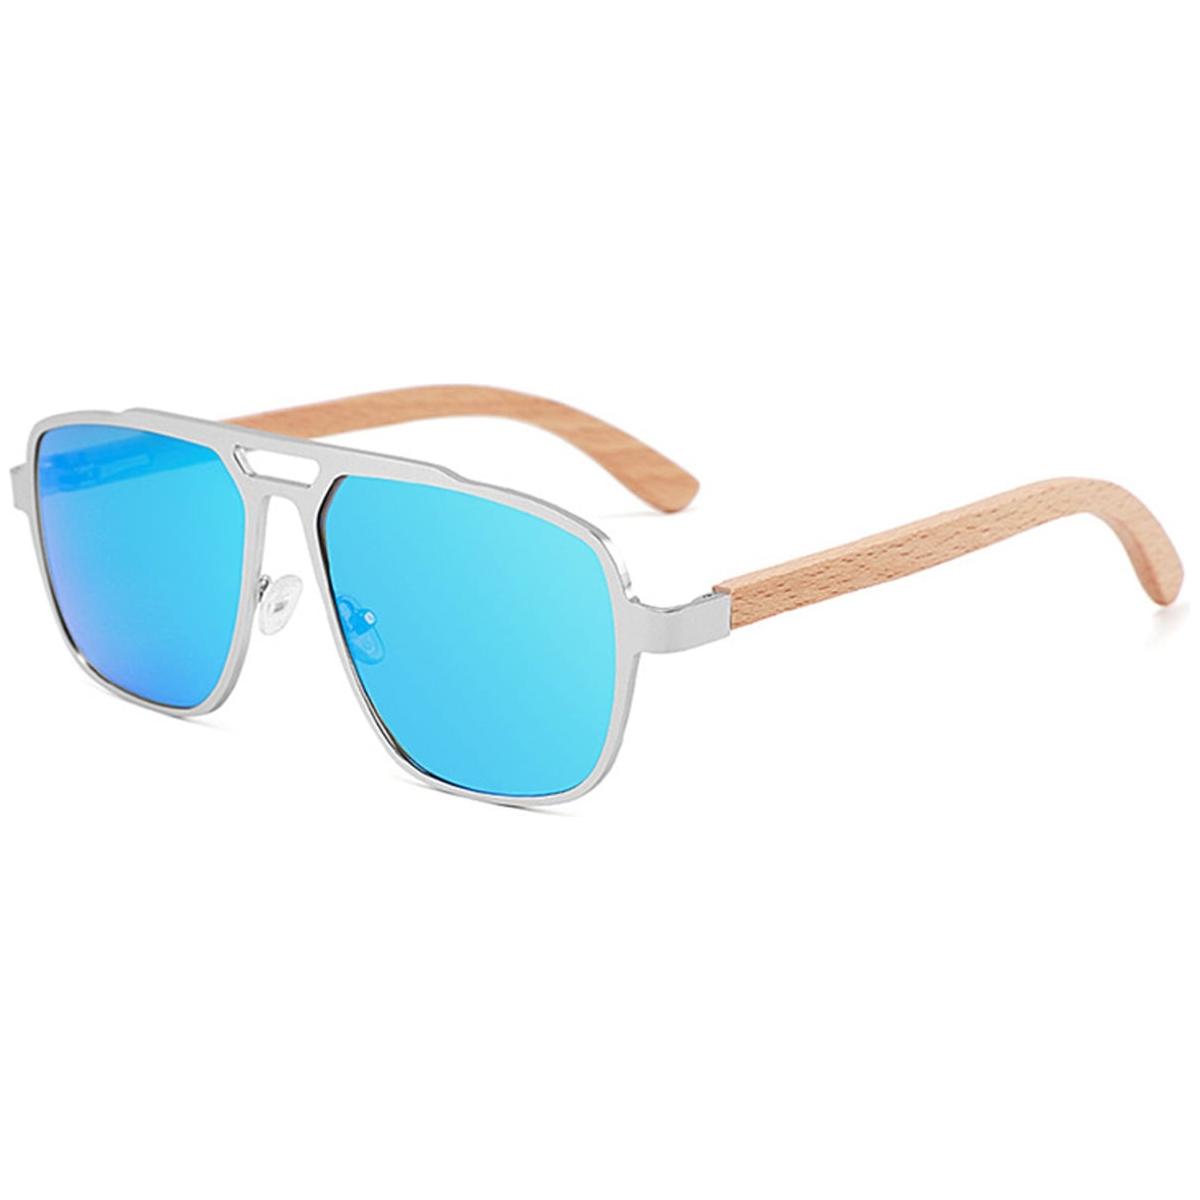 Candye Aviator Sunglasses SG5357 